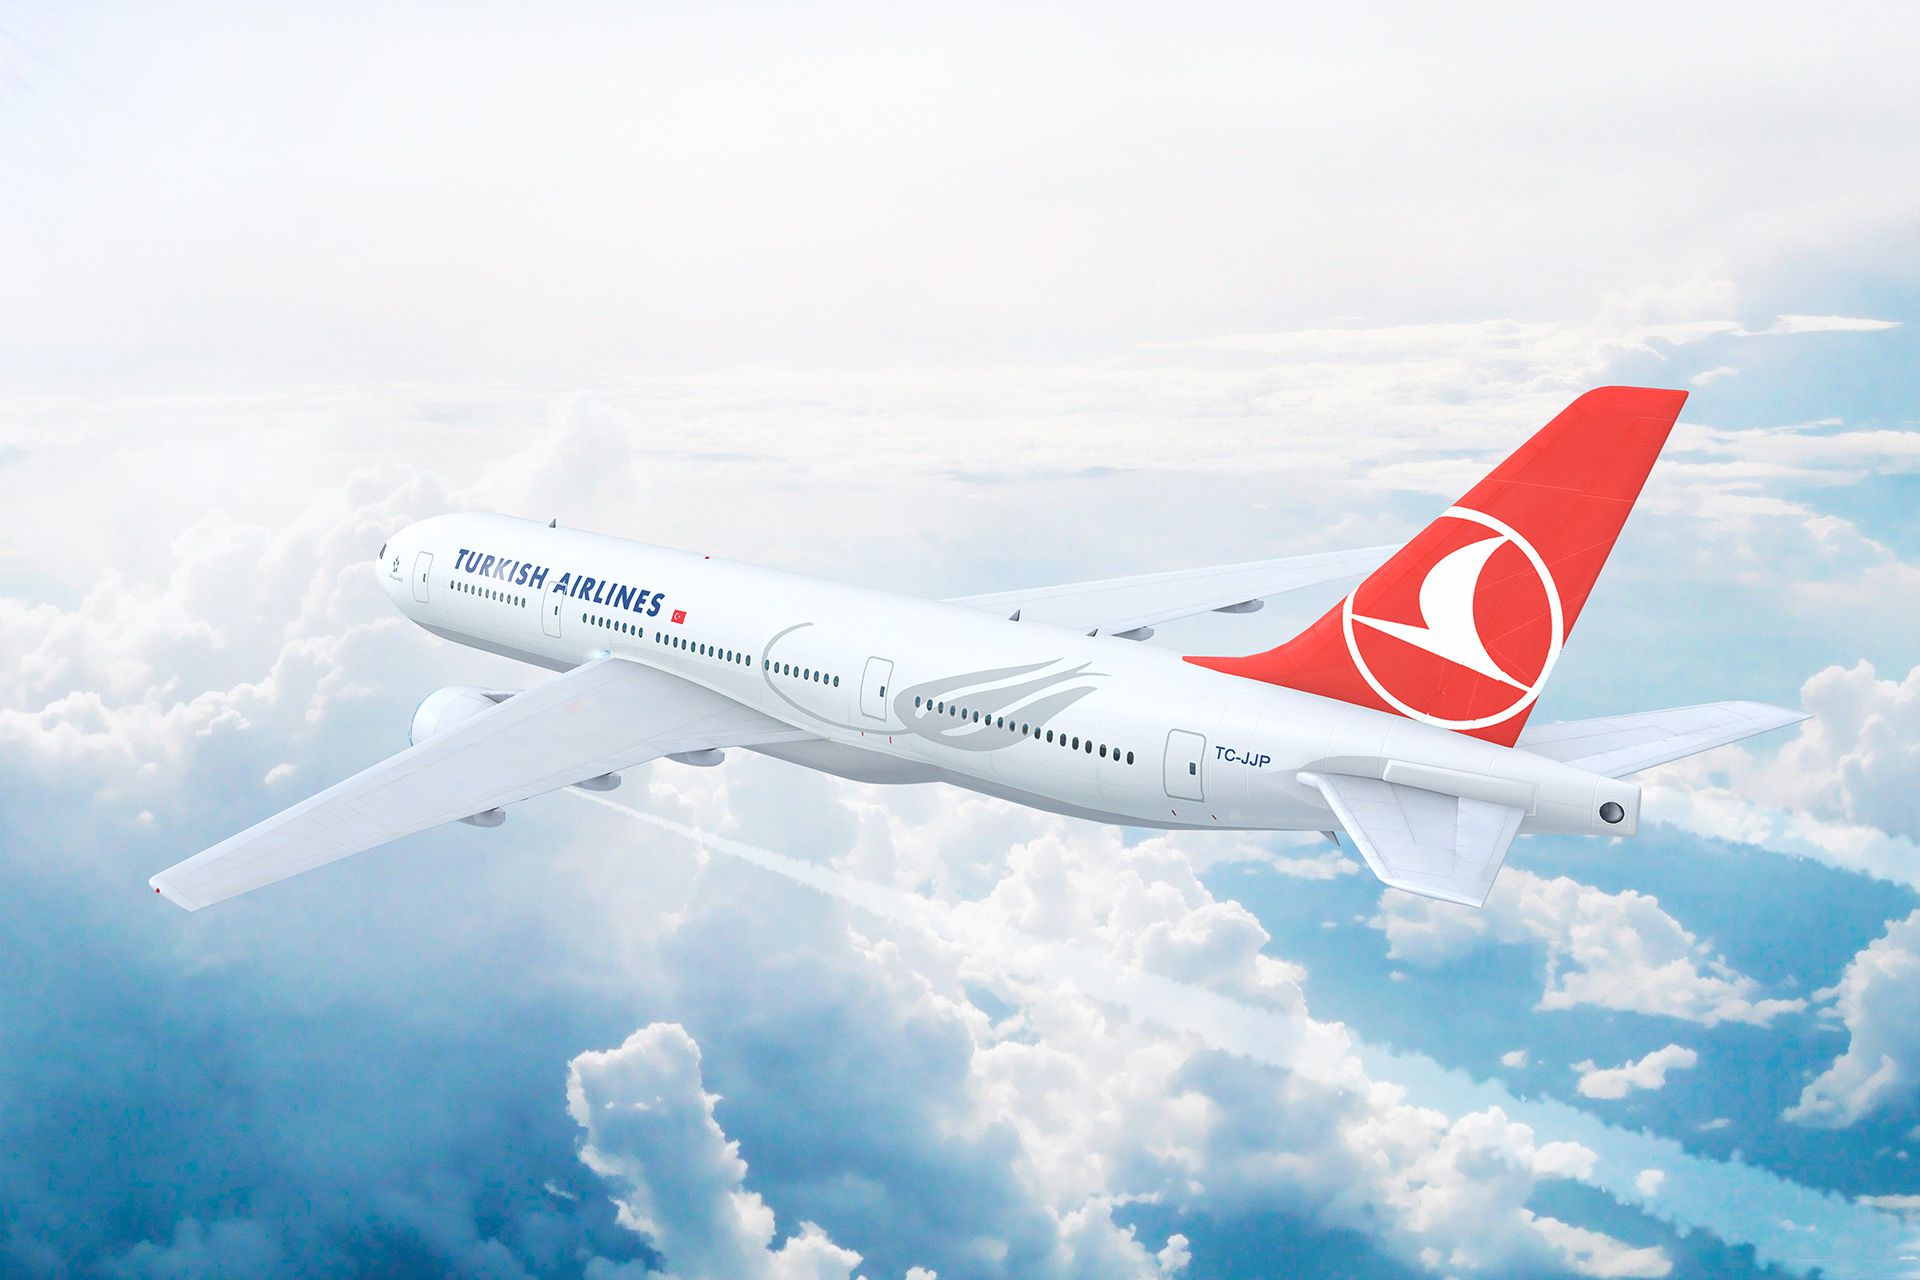 turkish-airline